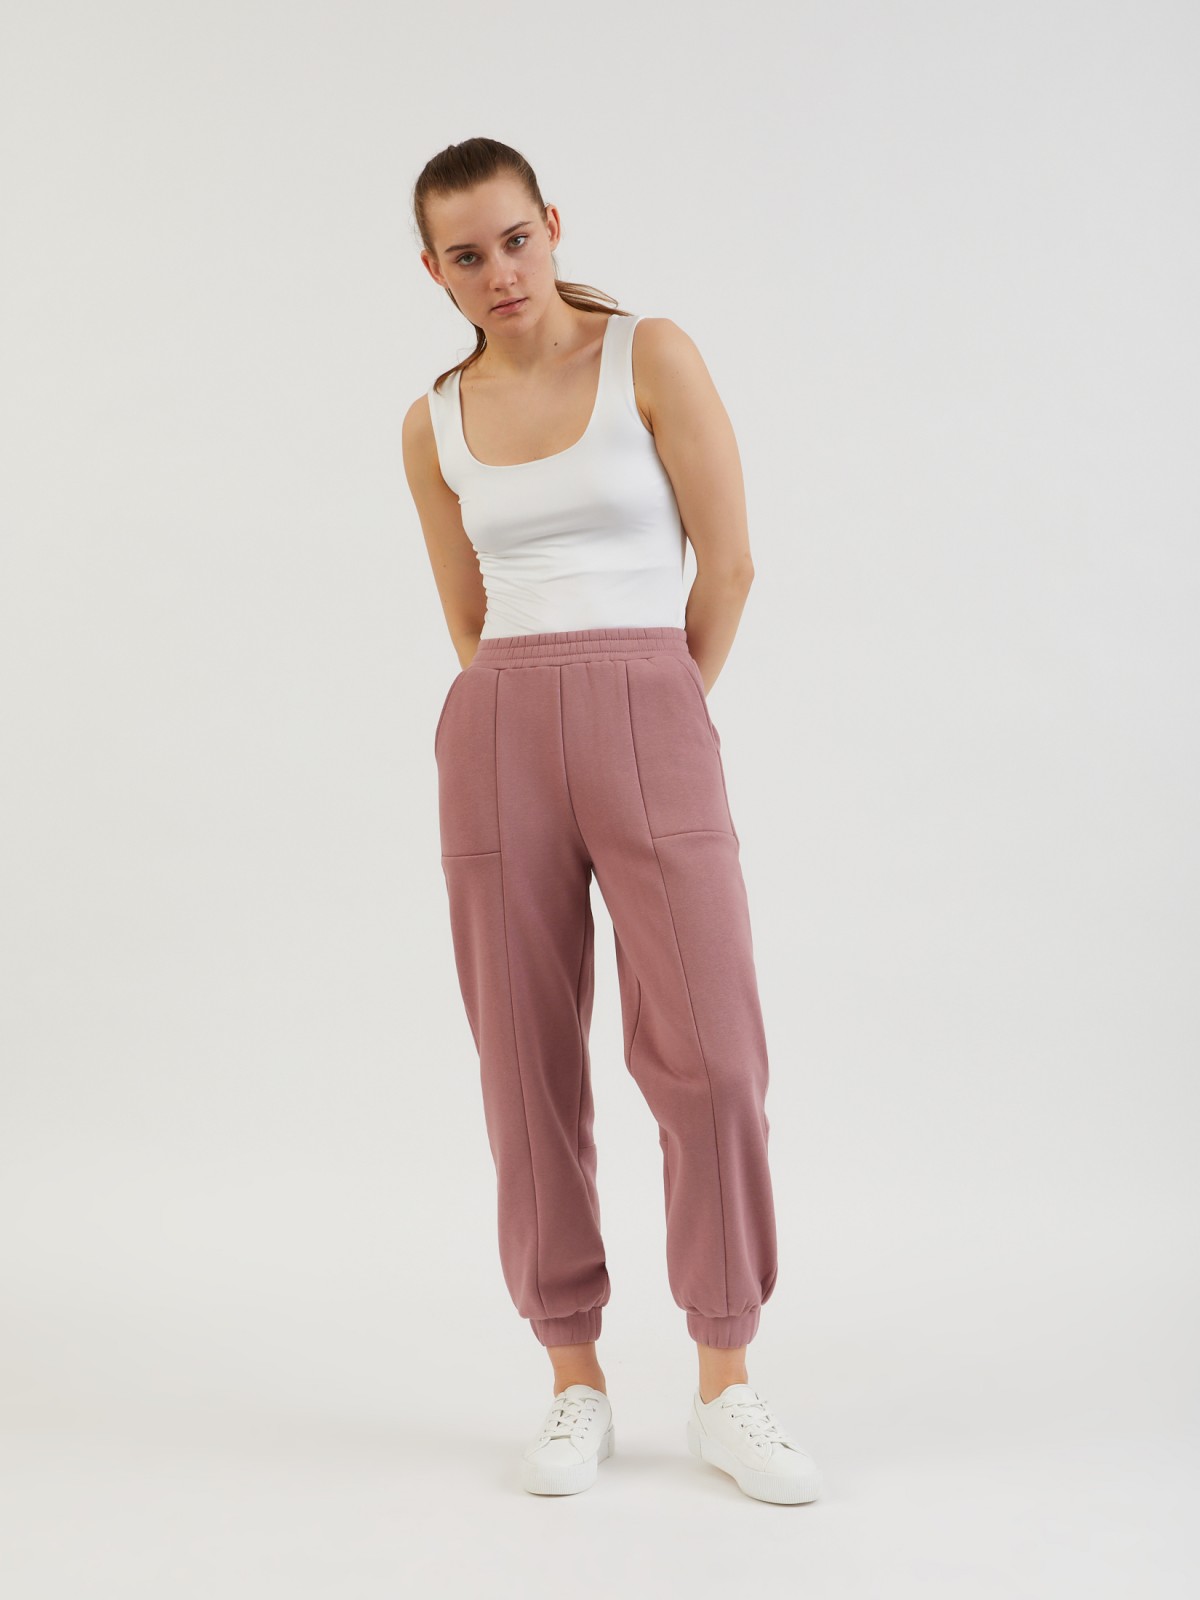 Трикотажные брюки-джоггеры zolla 22132732L321, цвет розовый, размер XS - фото 4